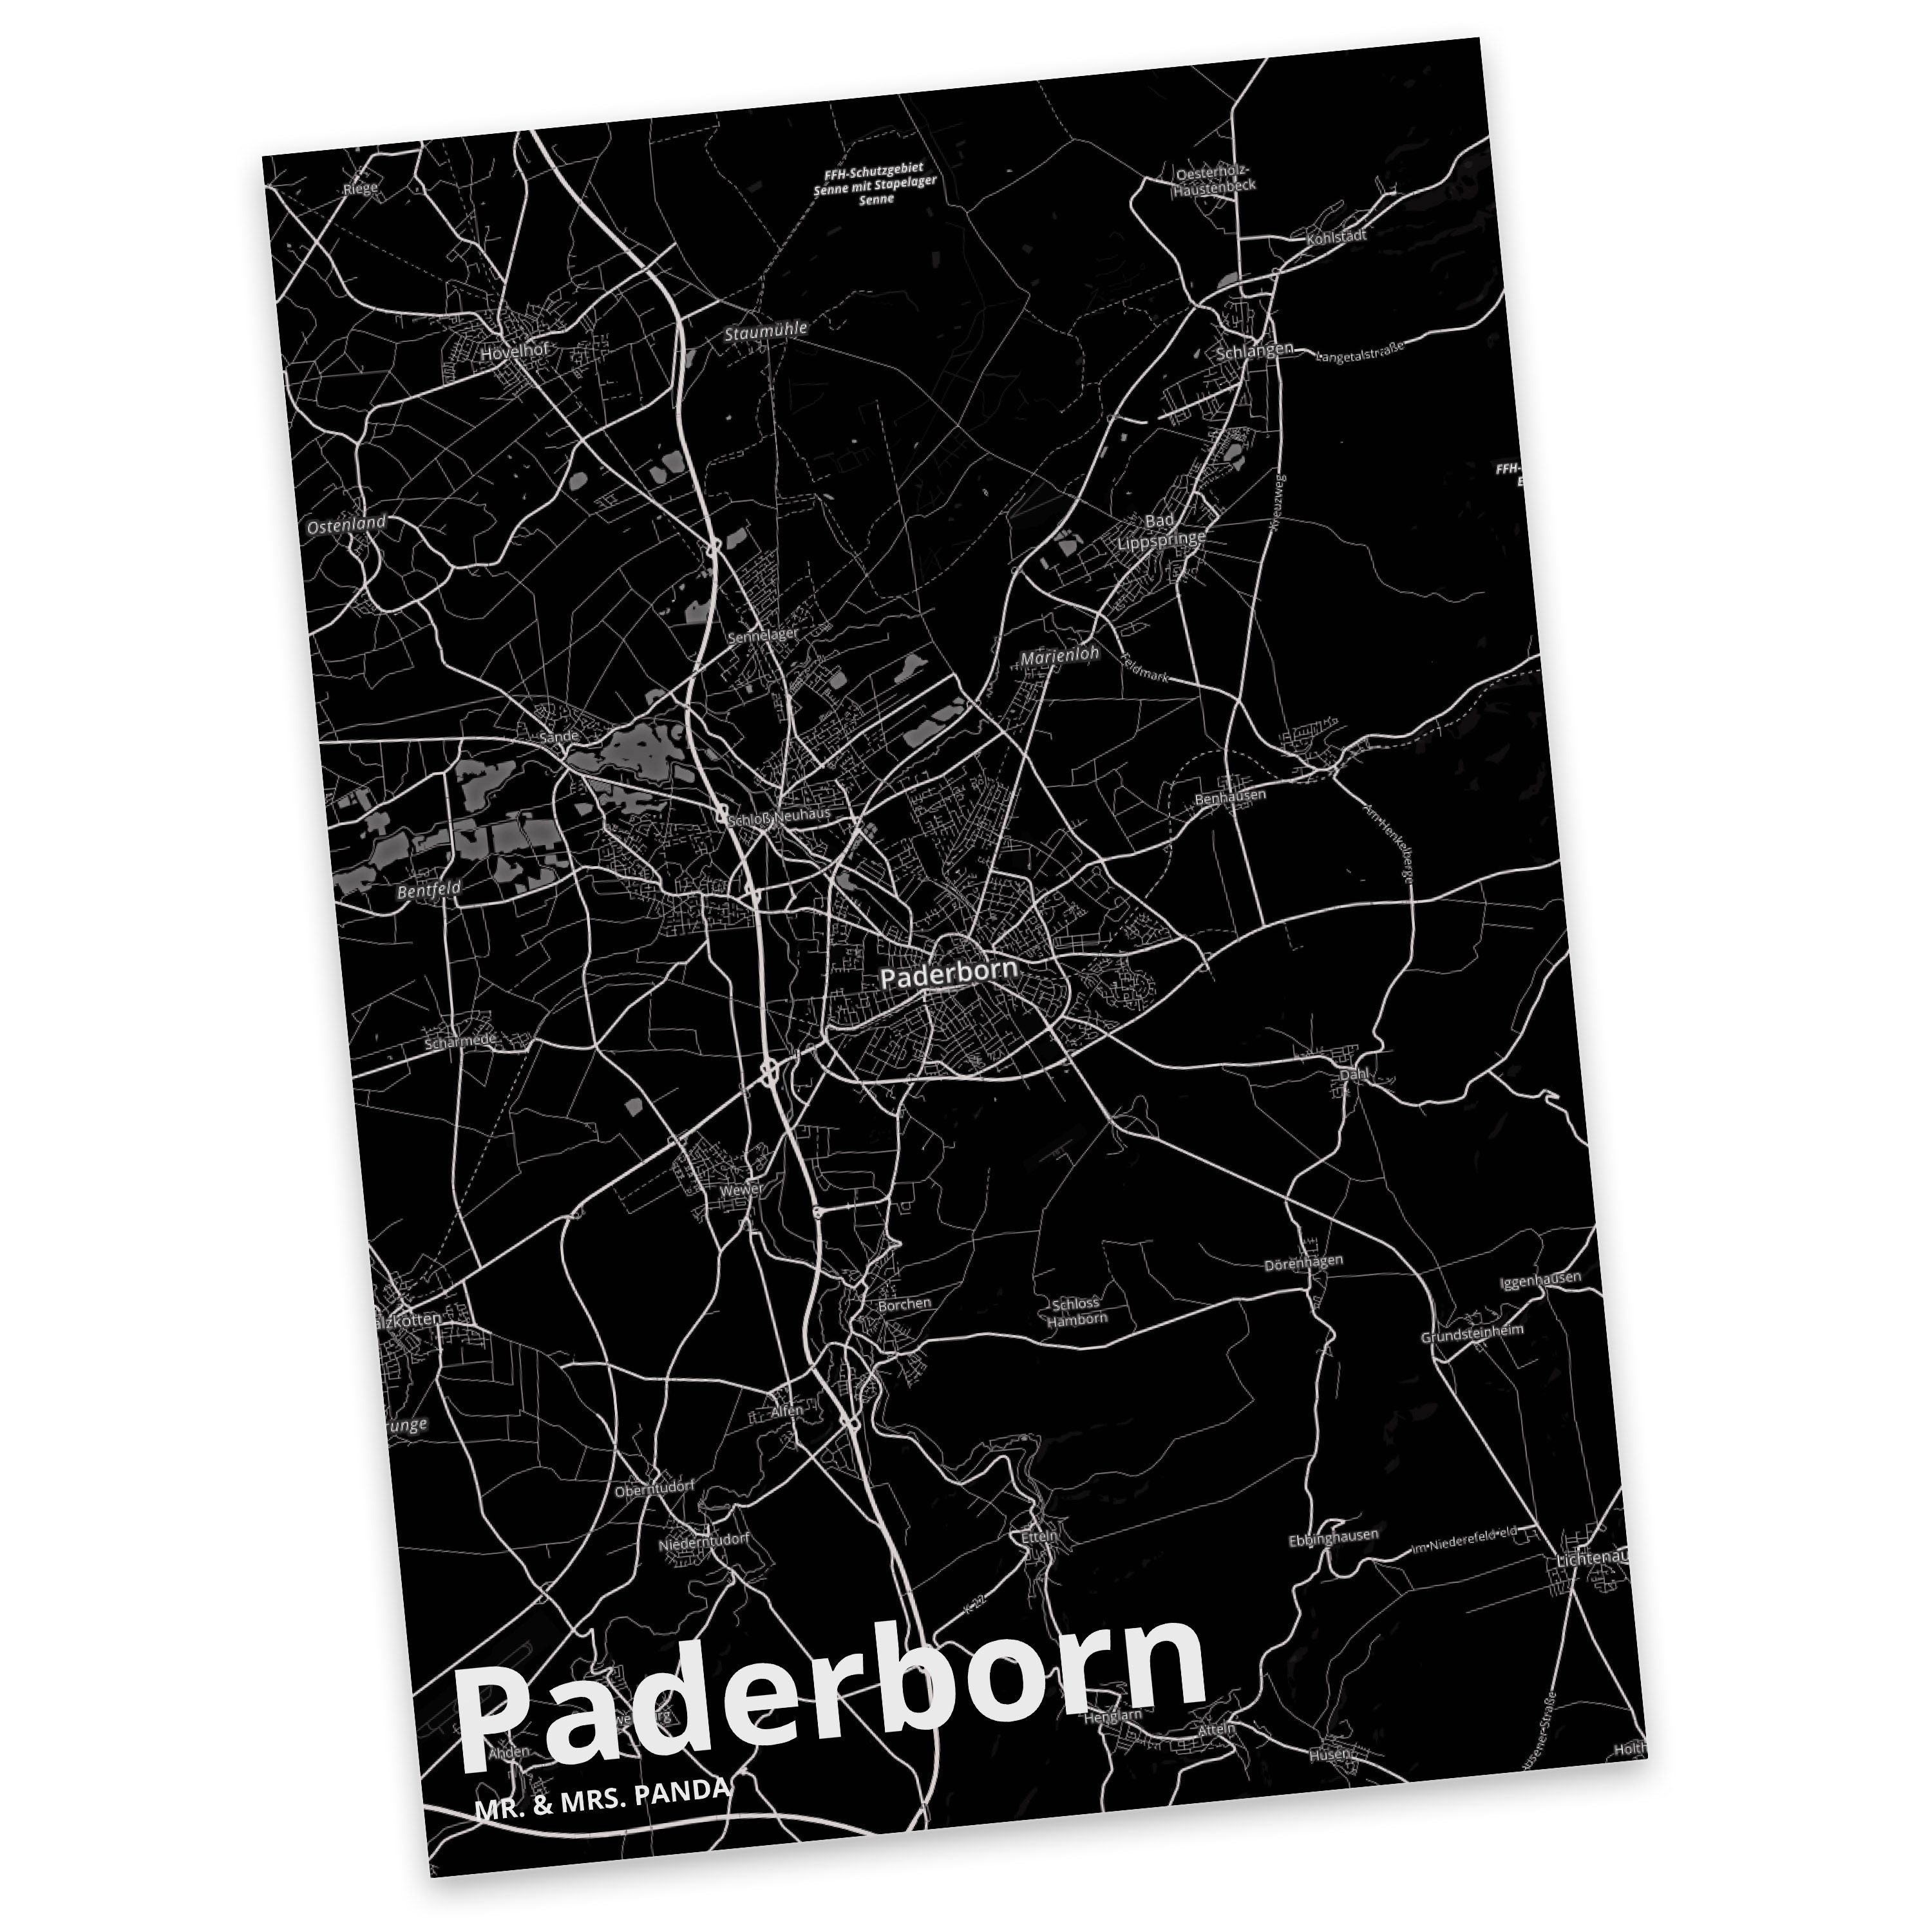 Mr. & Mrs. Panda Postkarte Paderborn - Geschenk, Ansichtskarte, Einladungskarte, Städte, Stadt D